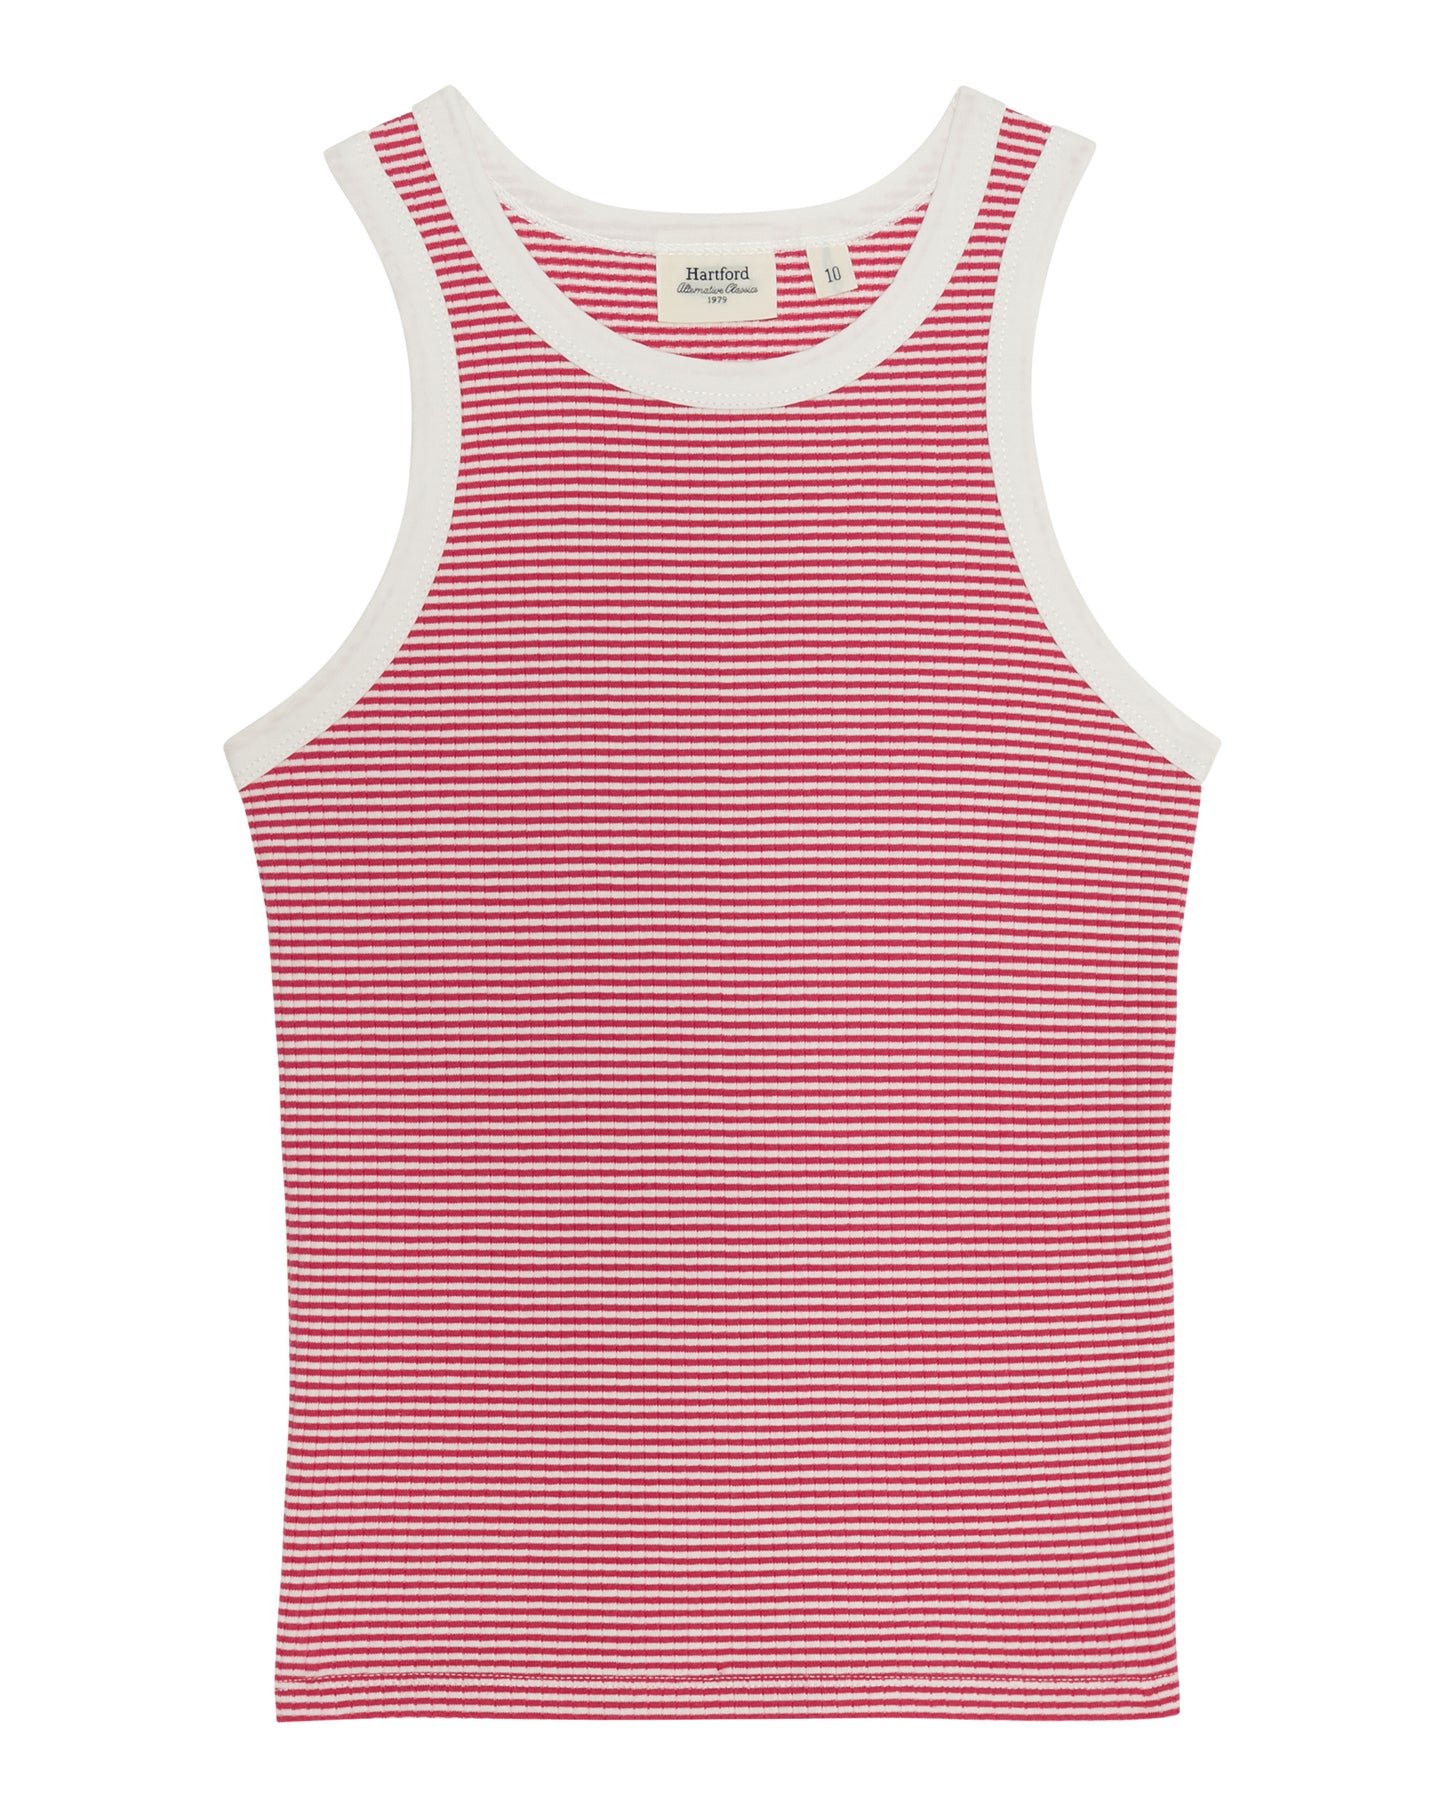 Teake Girls' Off-White & Fuschia Striped Ribbed Cotton Tank Top